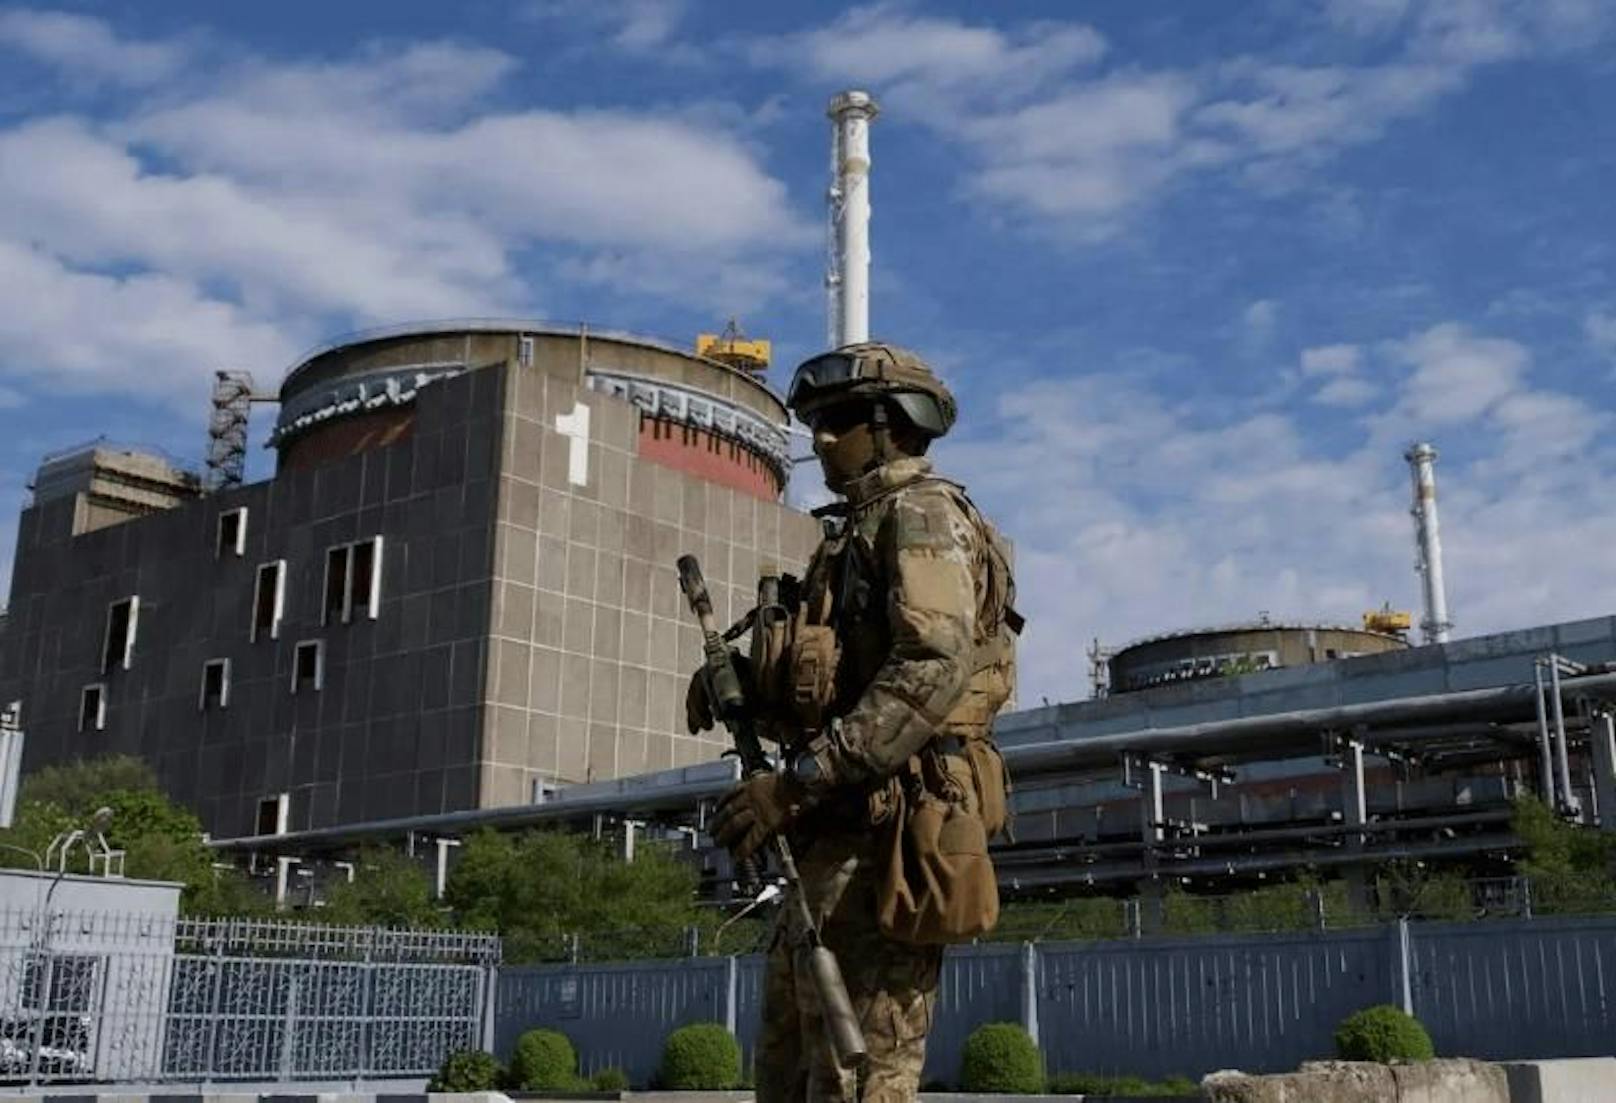 Die Internationale Atomenergiebehörde (IAEA) bekundet große Sorge über das ukrainische Atomkraftwerk in Saporischschja. Die Lage sei komplett außer Kontrolle.